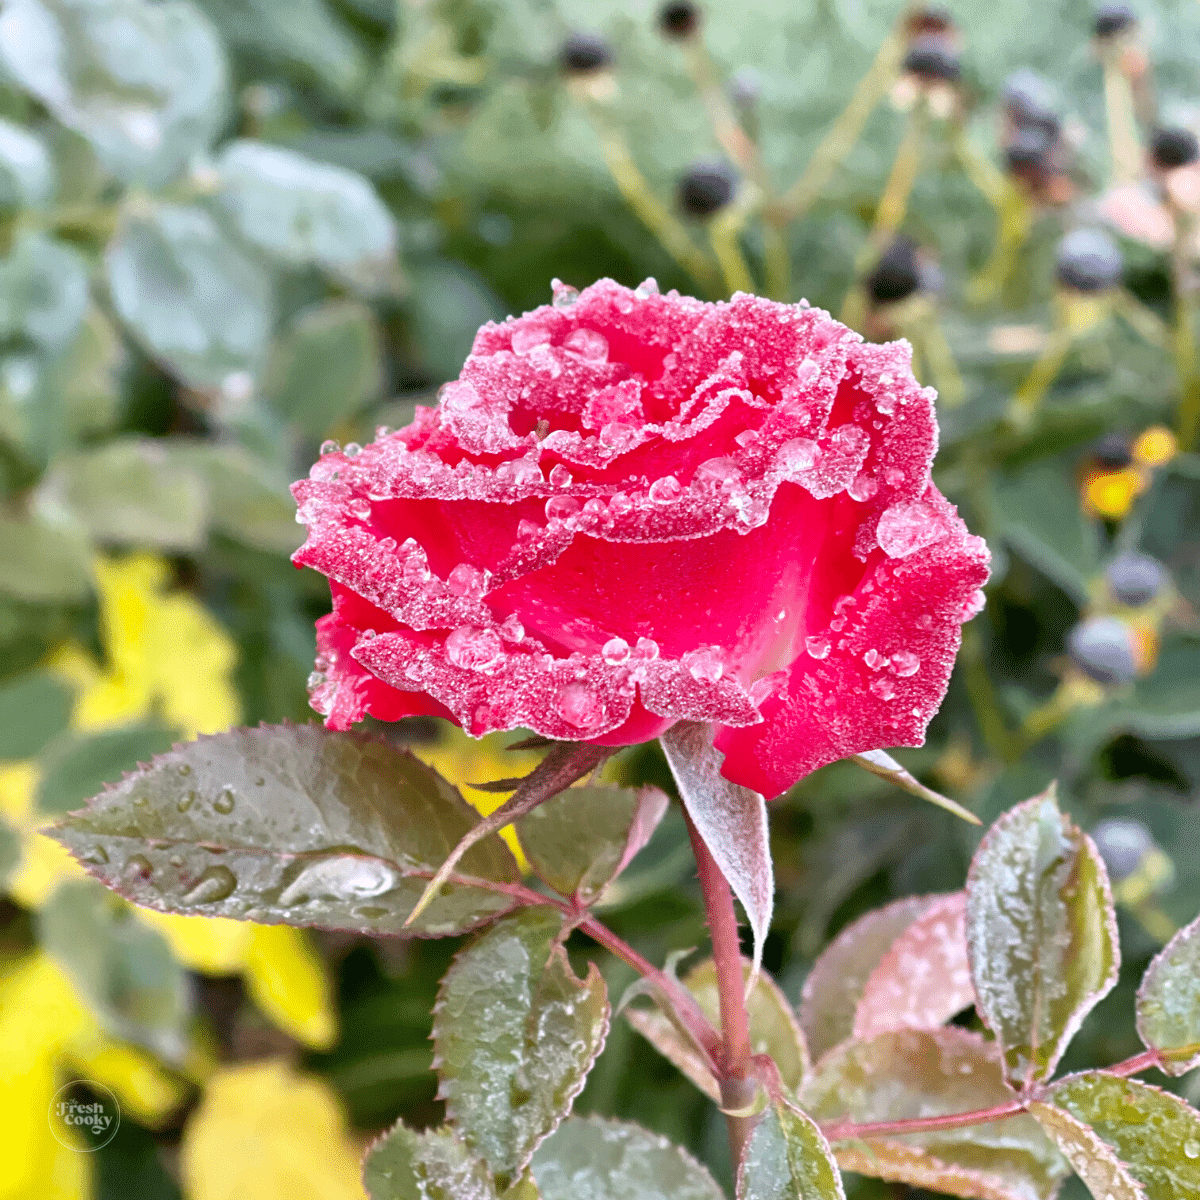 Icy rose in garden.